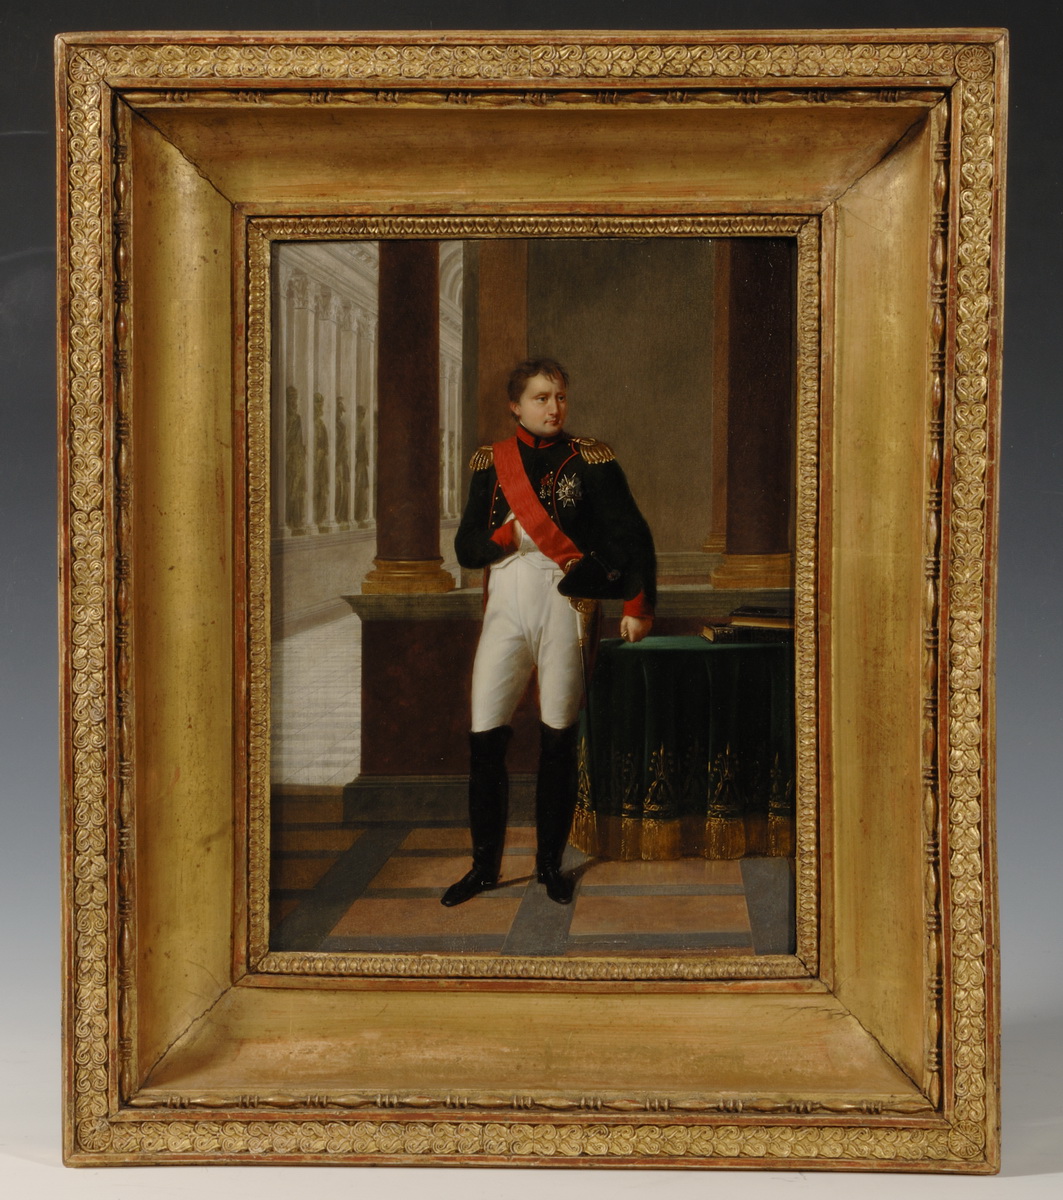 Napoléon en uniforme - Patrimoine Charles-André COLONNA WALEWSKI, en ligne directe de Napoléon